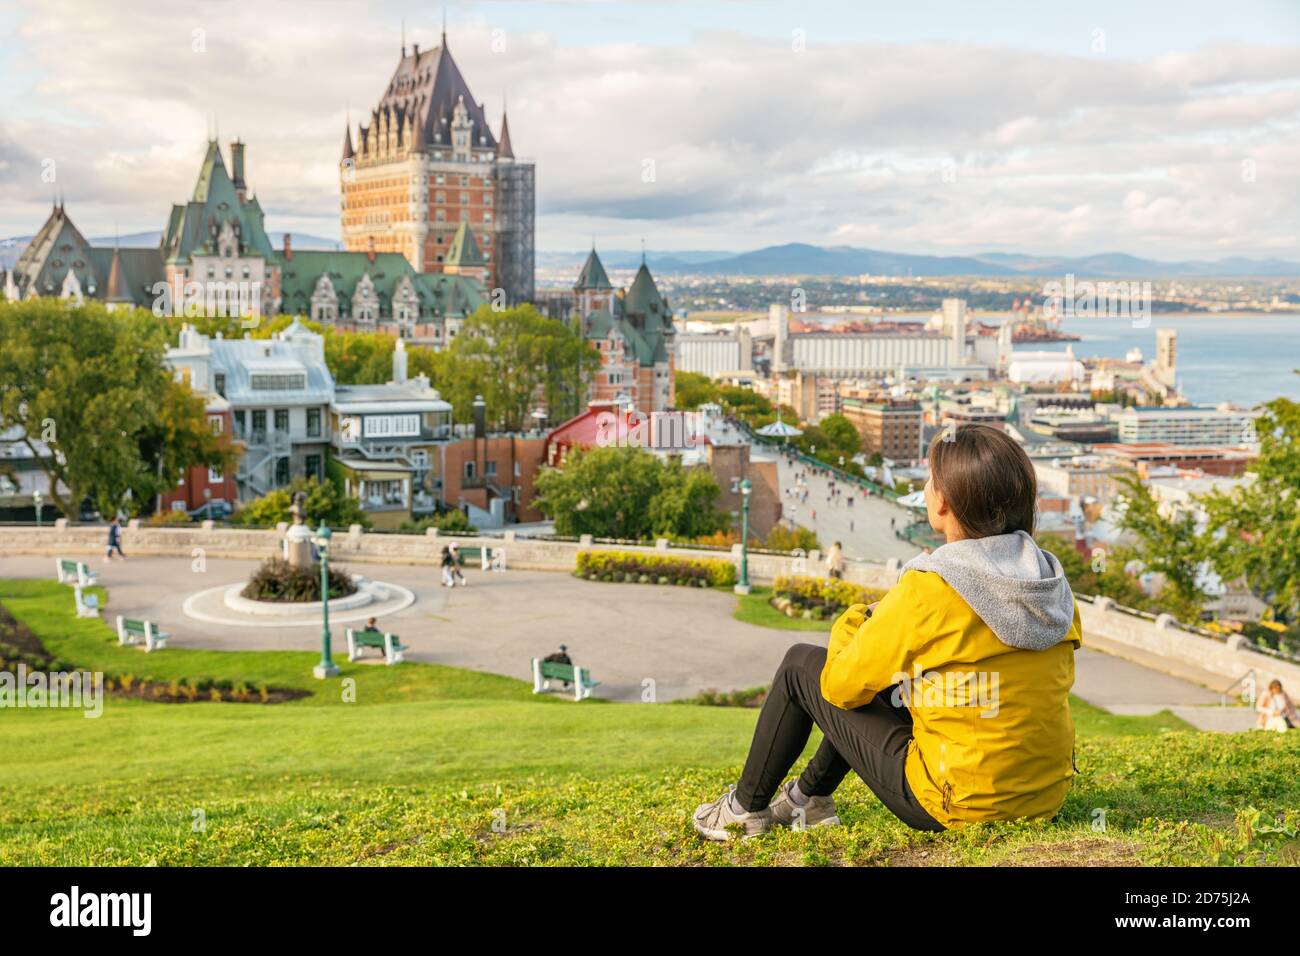 Kanada Reise Quebec City Tourist genießen Blick auf Chateau Frontenac Burg und St. Lawrence Fluss im Hintergrund. Herbst Reisen Urlaub Menschen Stockfoto